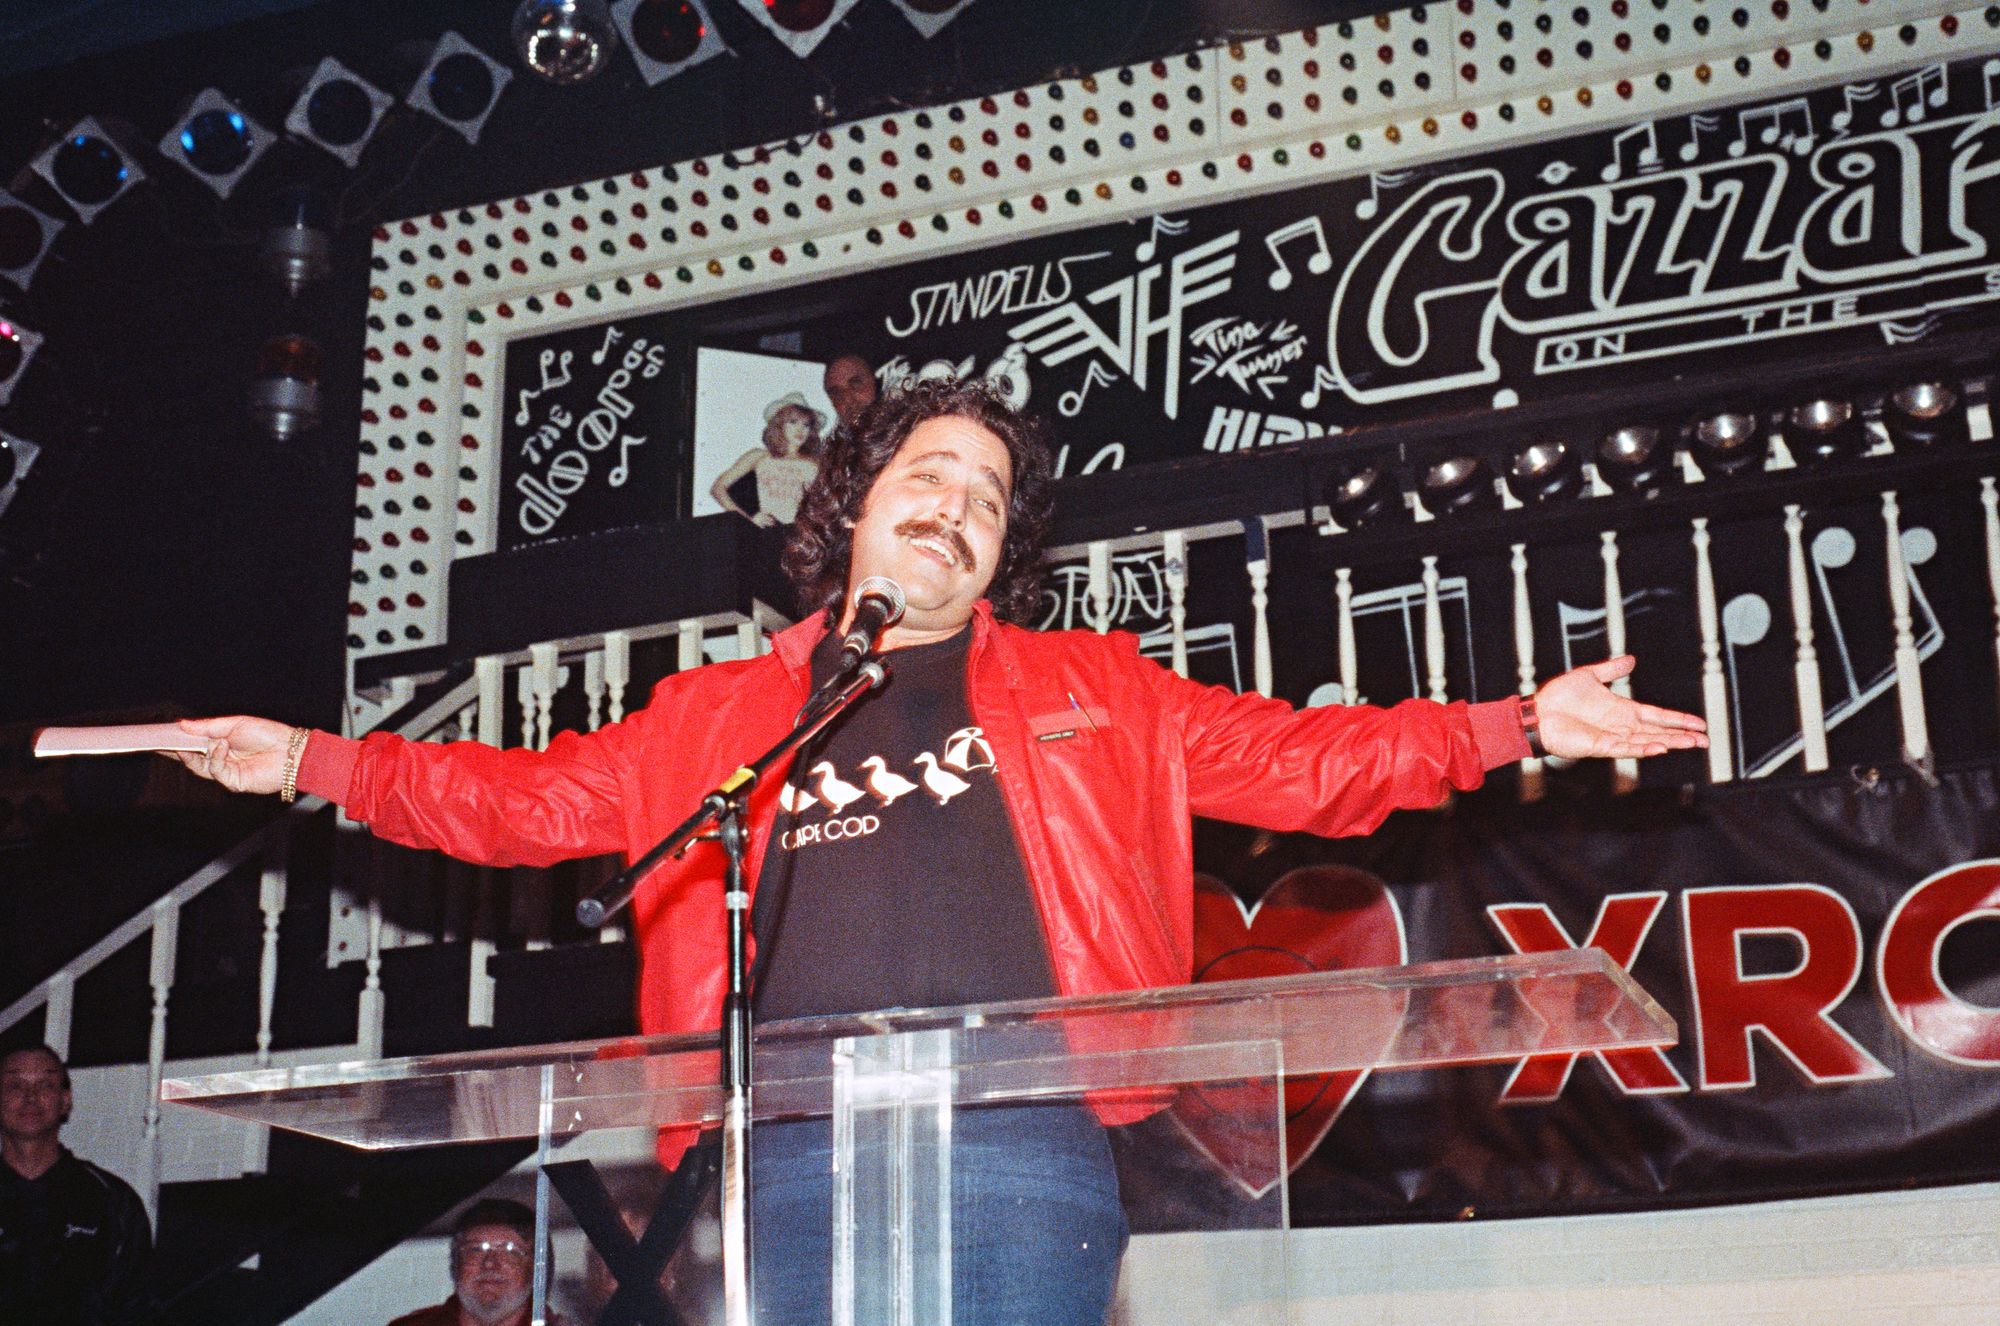 Vuonna 1989 Ron Jeremy juhli aikuisviihdetapahtumassa Hollywoodissa. © Abacus Media Rights Limited / Yle